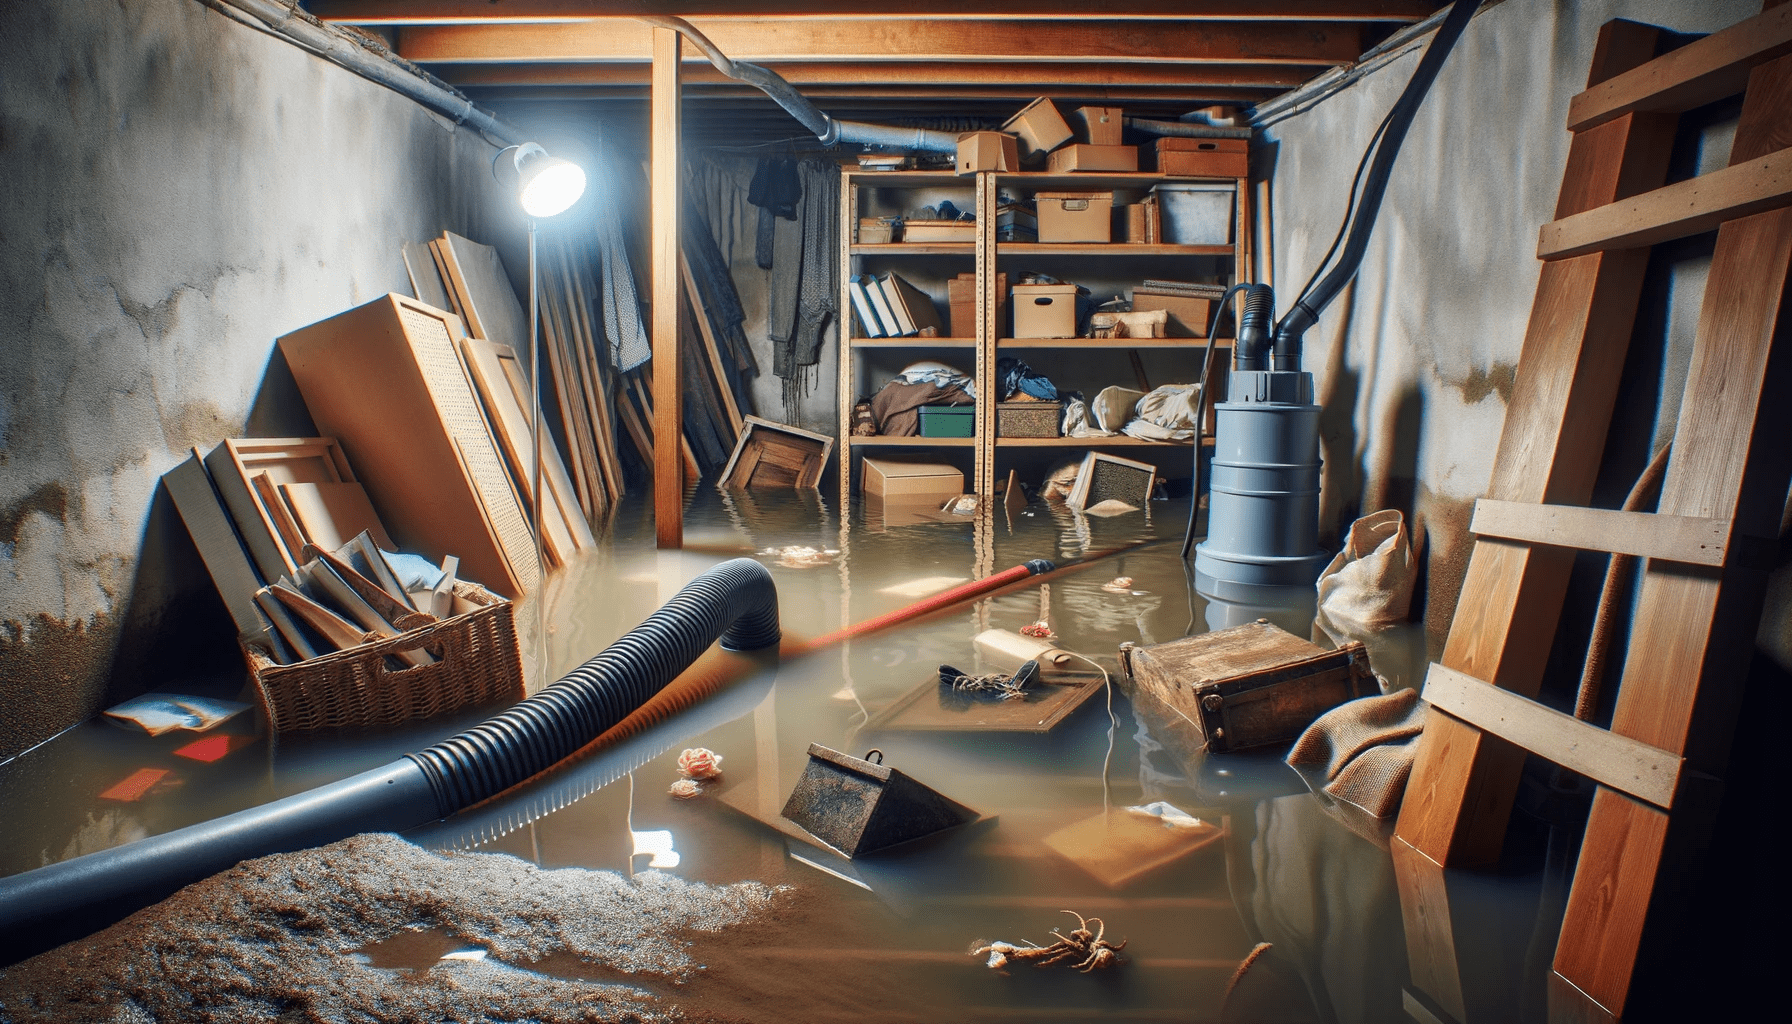 Überfluteter Keller mit Gegenständen im Wasser, umgestürztem Regal und aktiver Tauchpumpe.